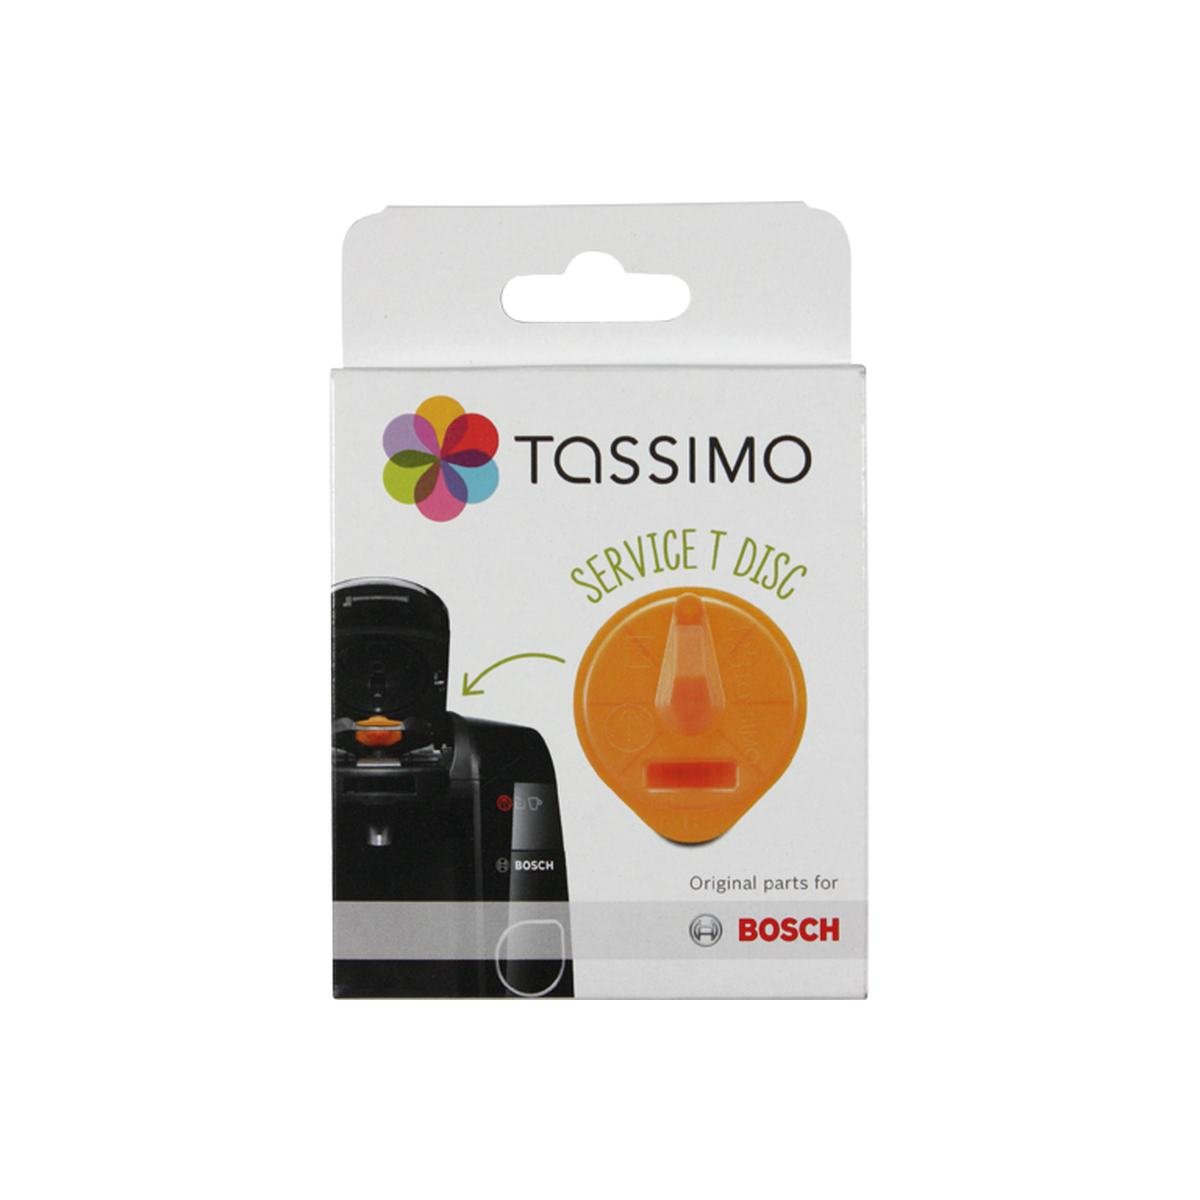 Service T-disc orange til Tassimo kaffemaskine passer til Bosch